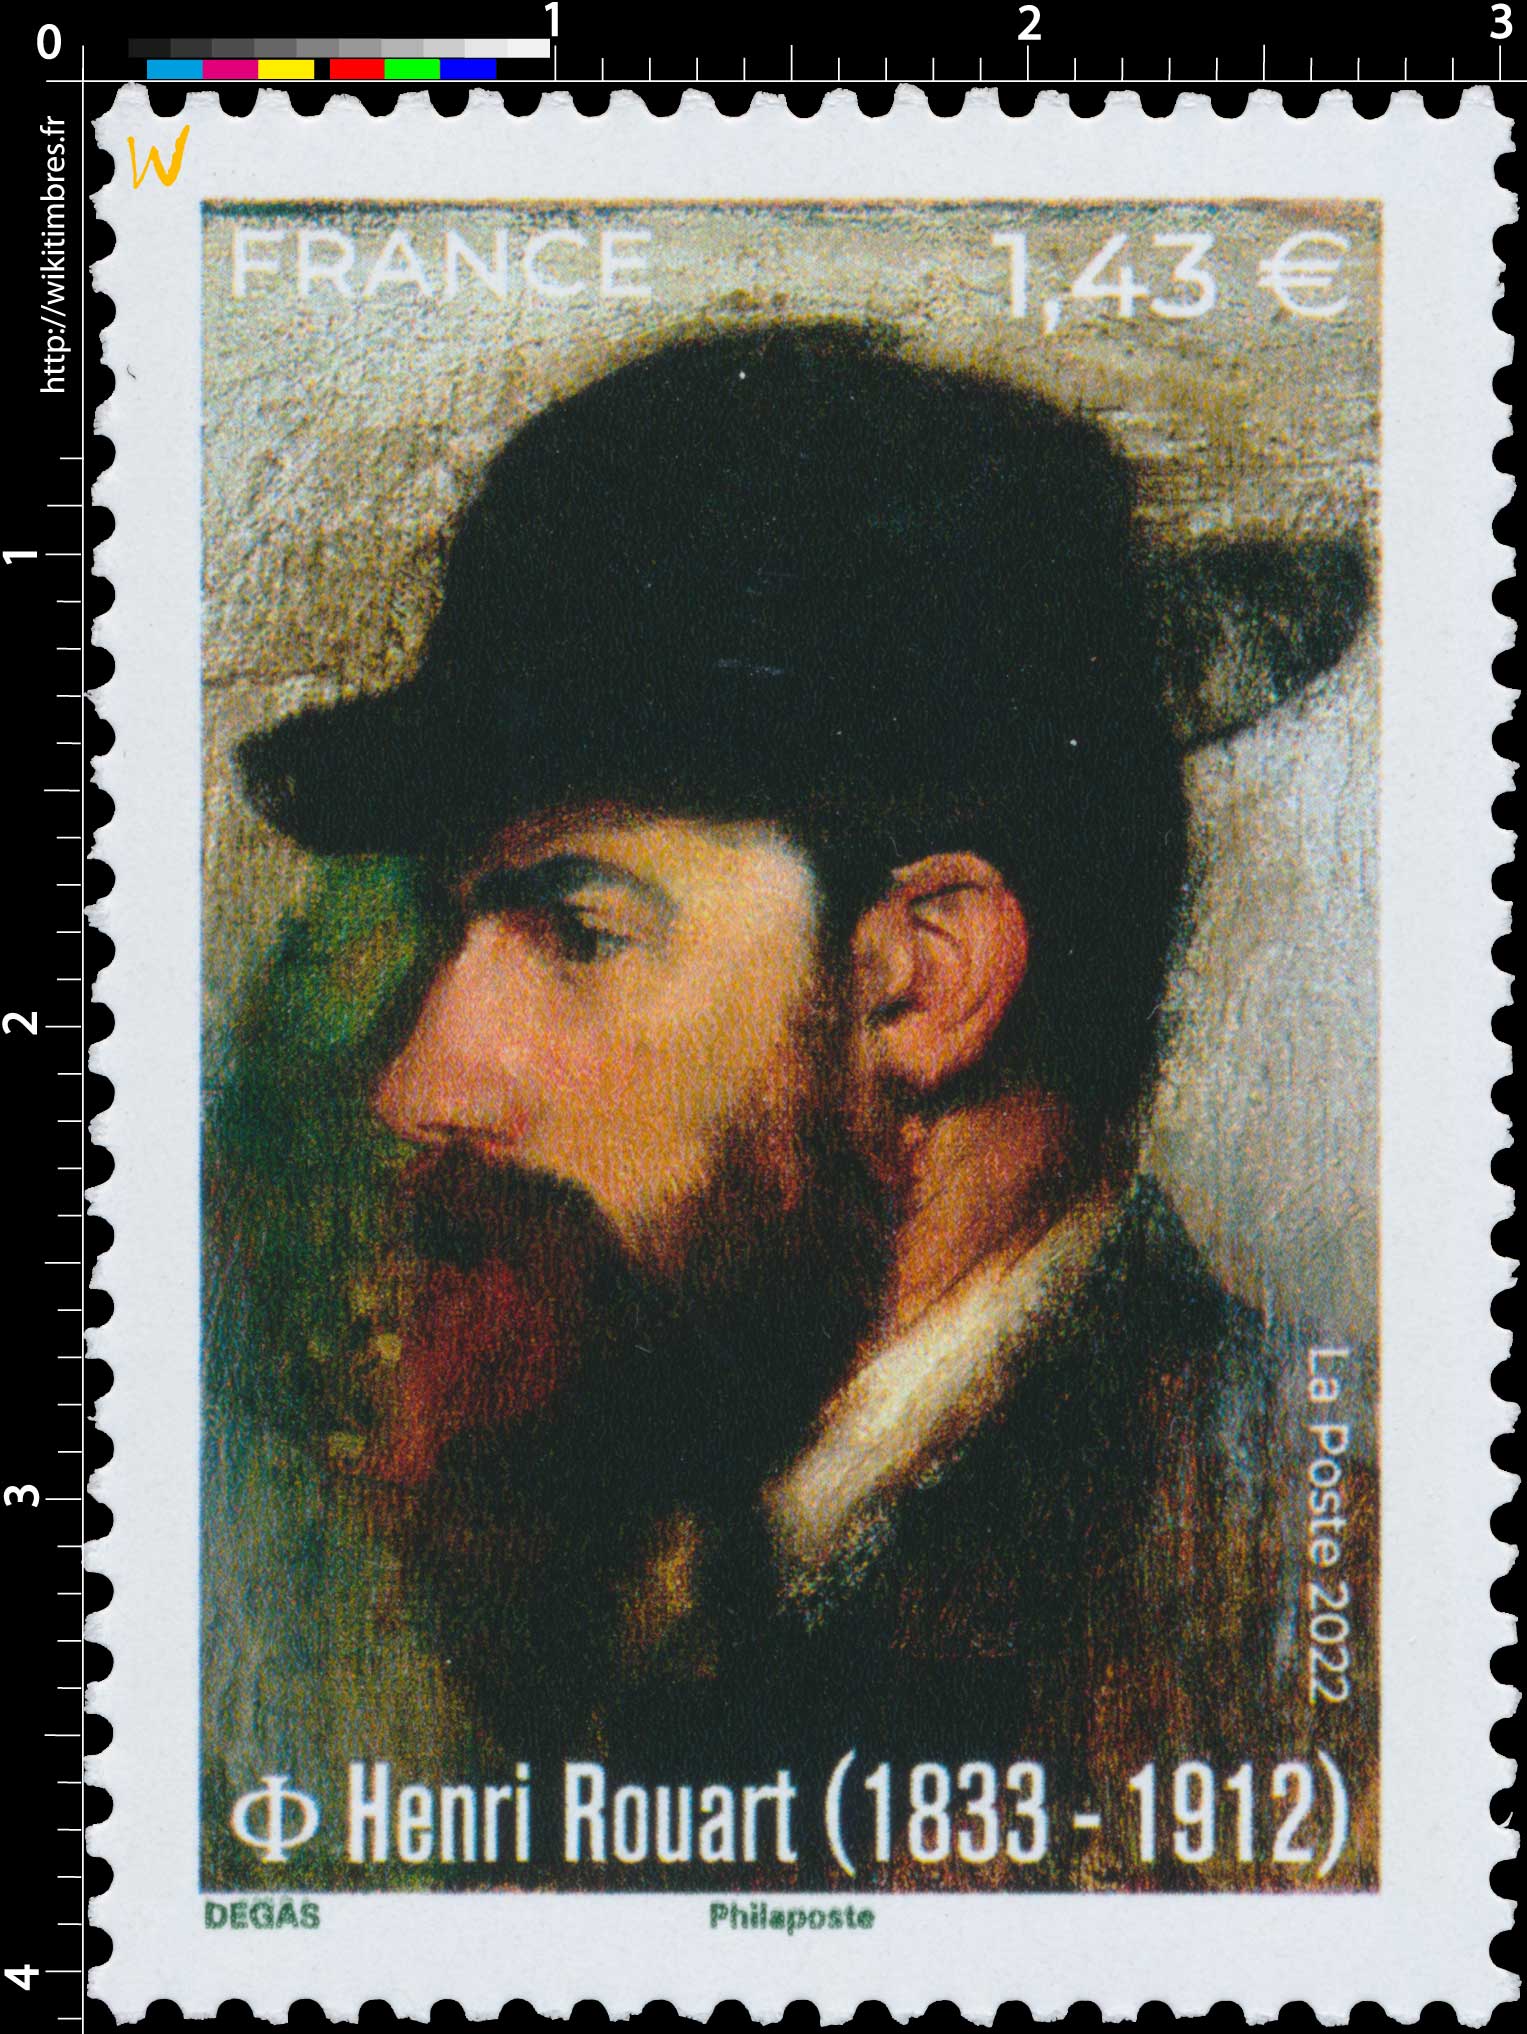 2022 Henri ROUART (1833 - 1912)